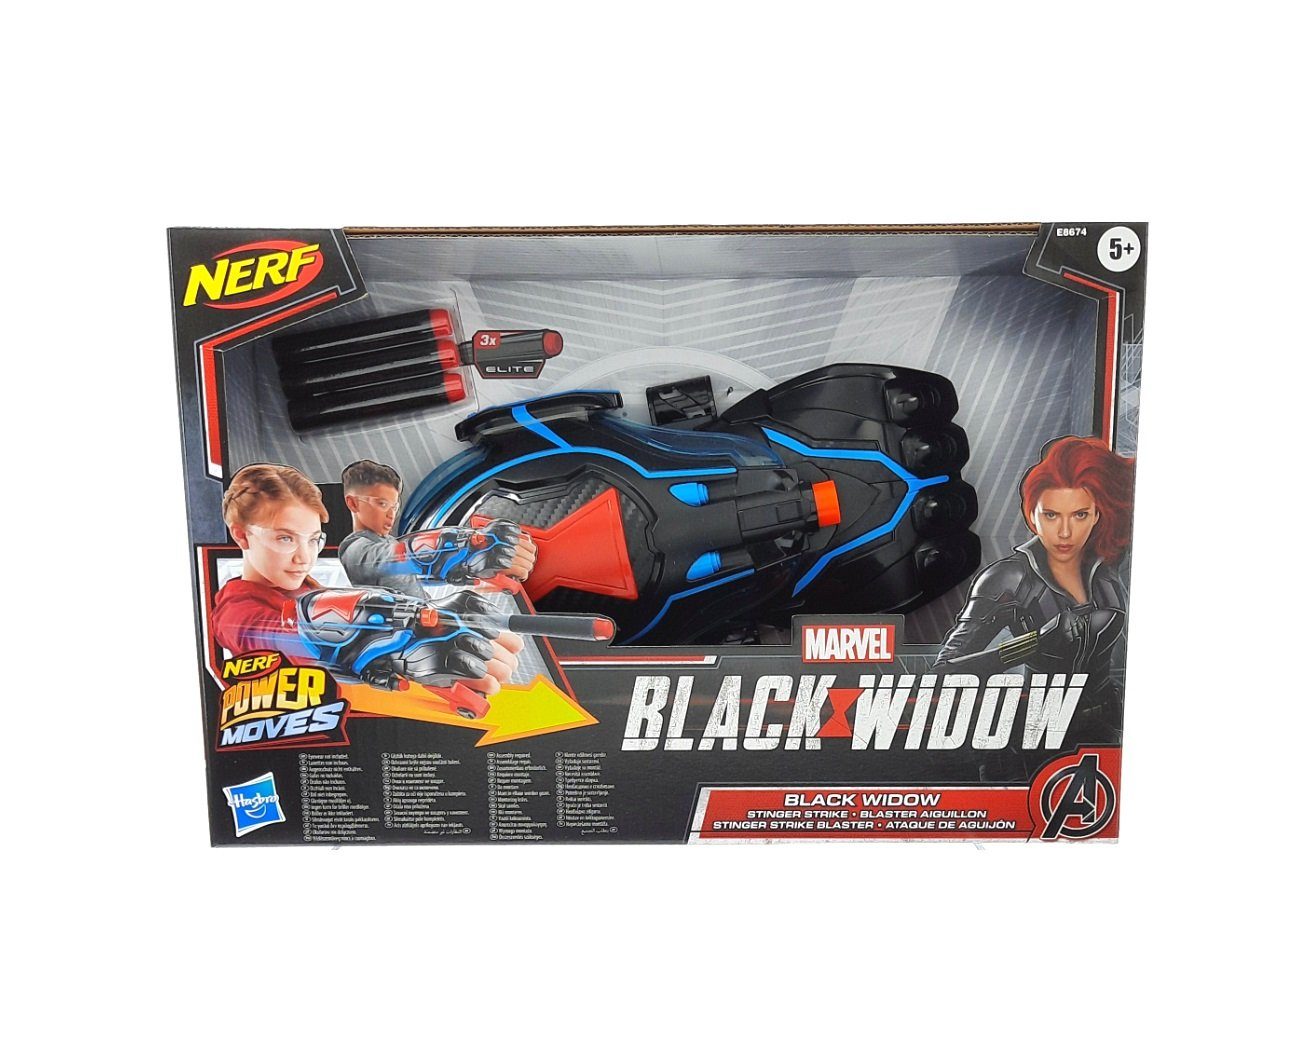 Nerf Blaster »Power Moves Marvel Black Widow Stinger Strike Blaster  Spielpistole« online kaufen | OTTO